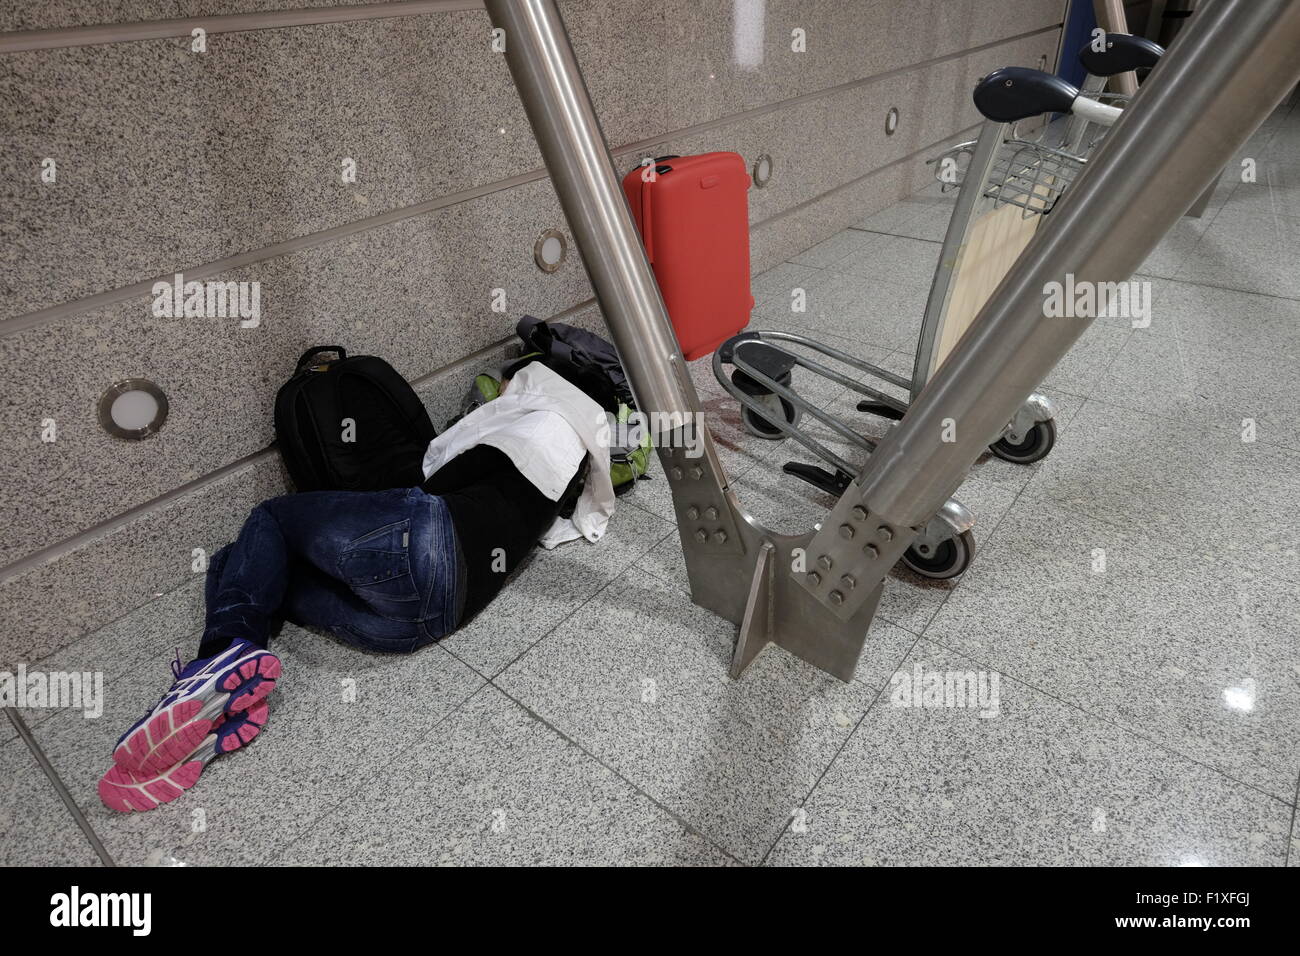 Sommeil passager sur le plancher à l'aérogare de l'aéroport Sá Carneiro de Porto, Portugal Banque D'Images